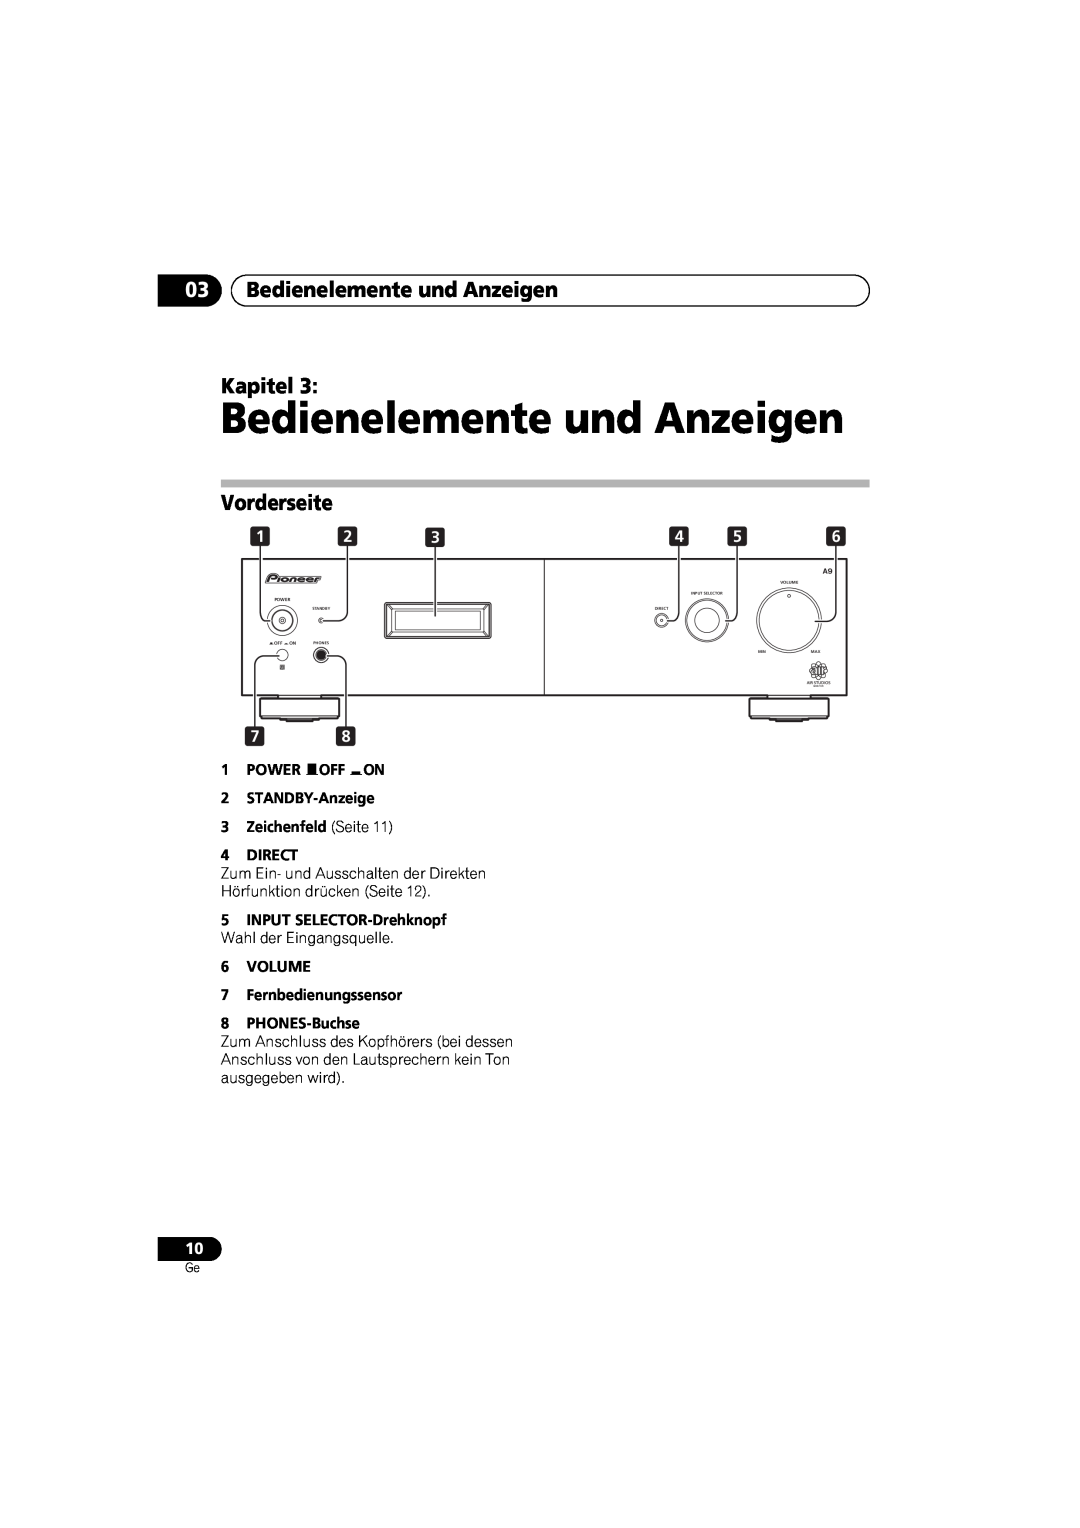 Pioneer A-A9-J 03Bedienelemente und Anzeigen Kapitel, Vorderseite, 1POWER OFF ON 2STANDBY-Anzeige, Volume, Power 